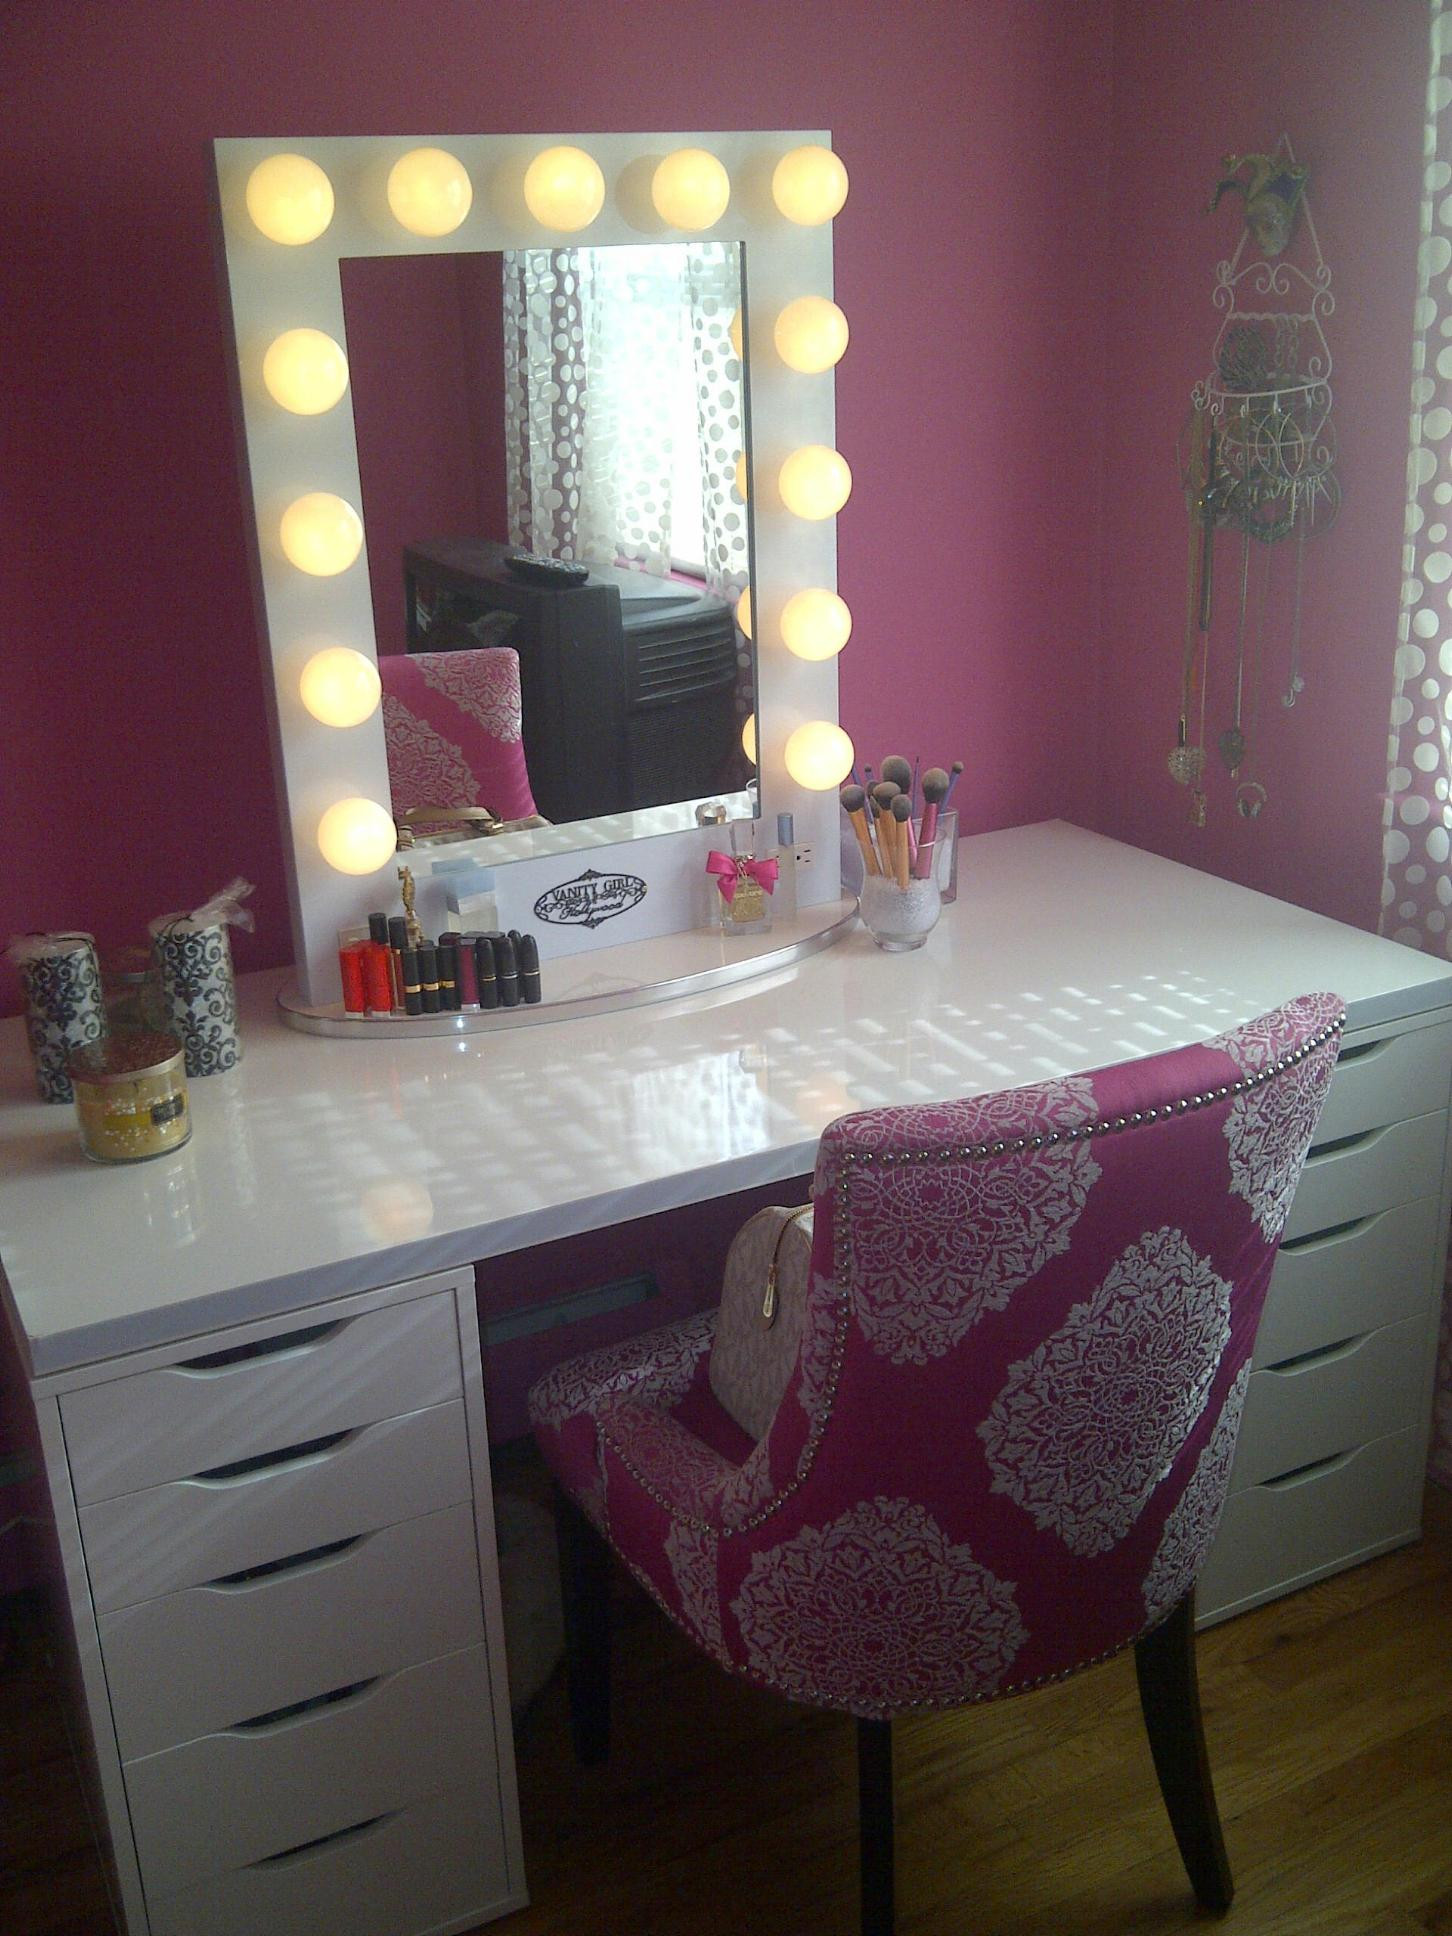 Bedroom Vanity Set With Lights
 vanity